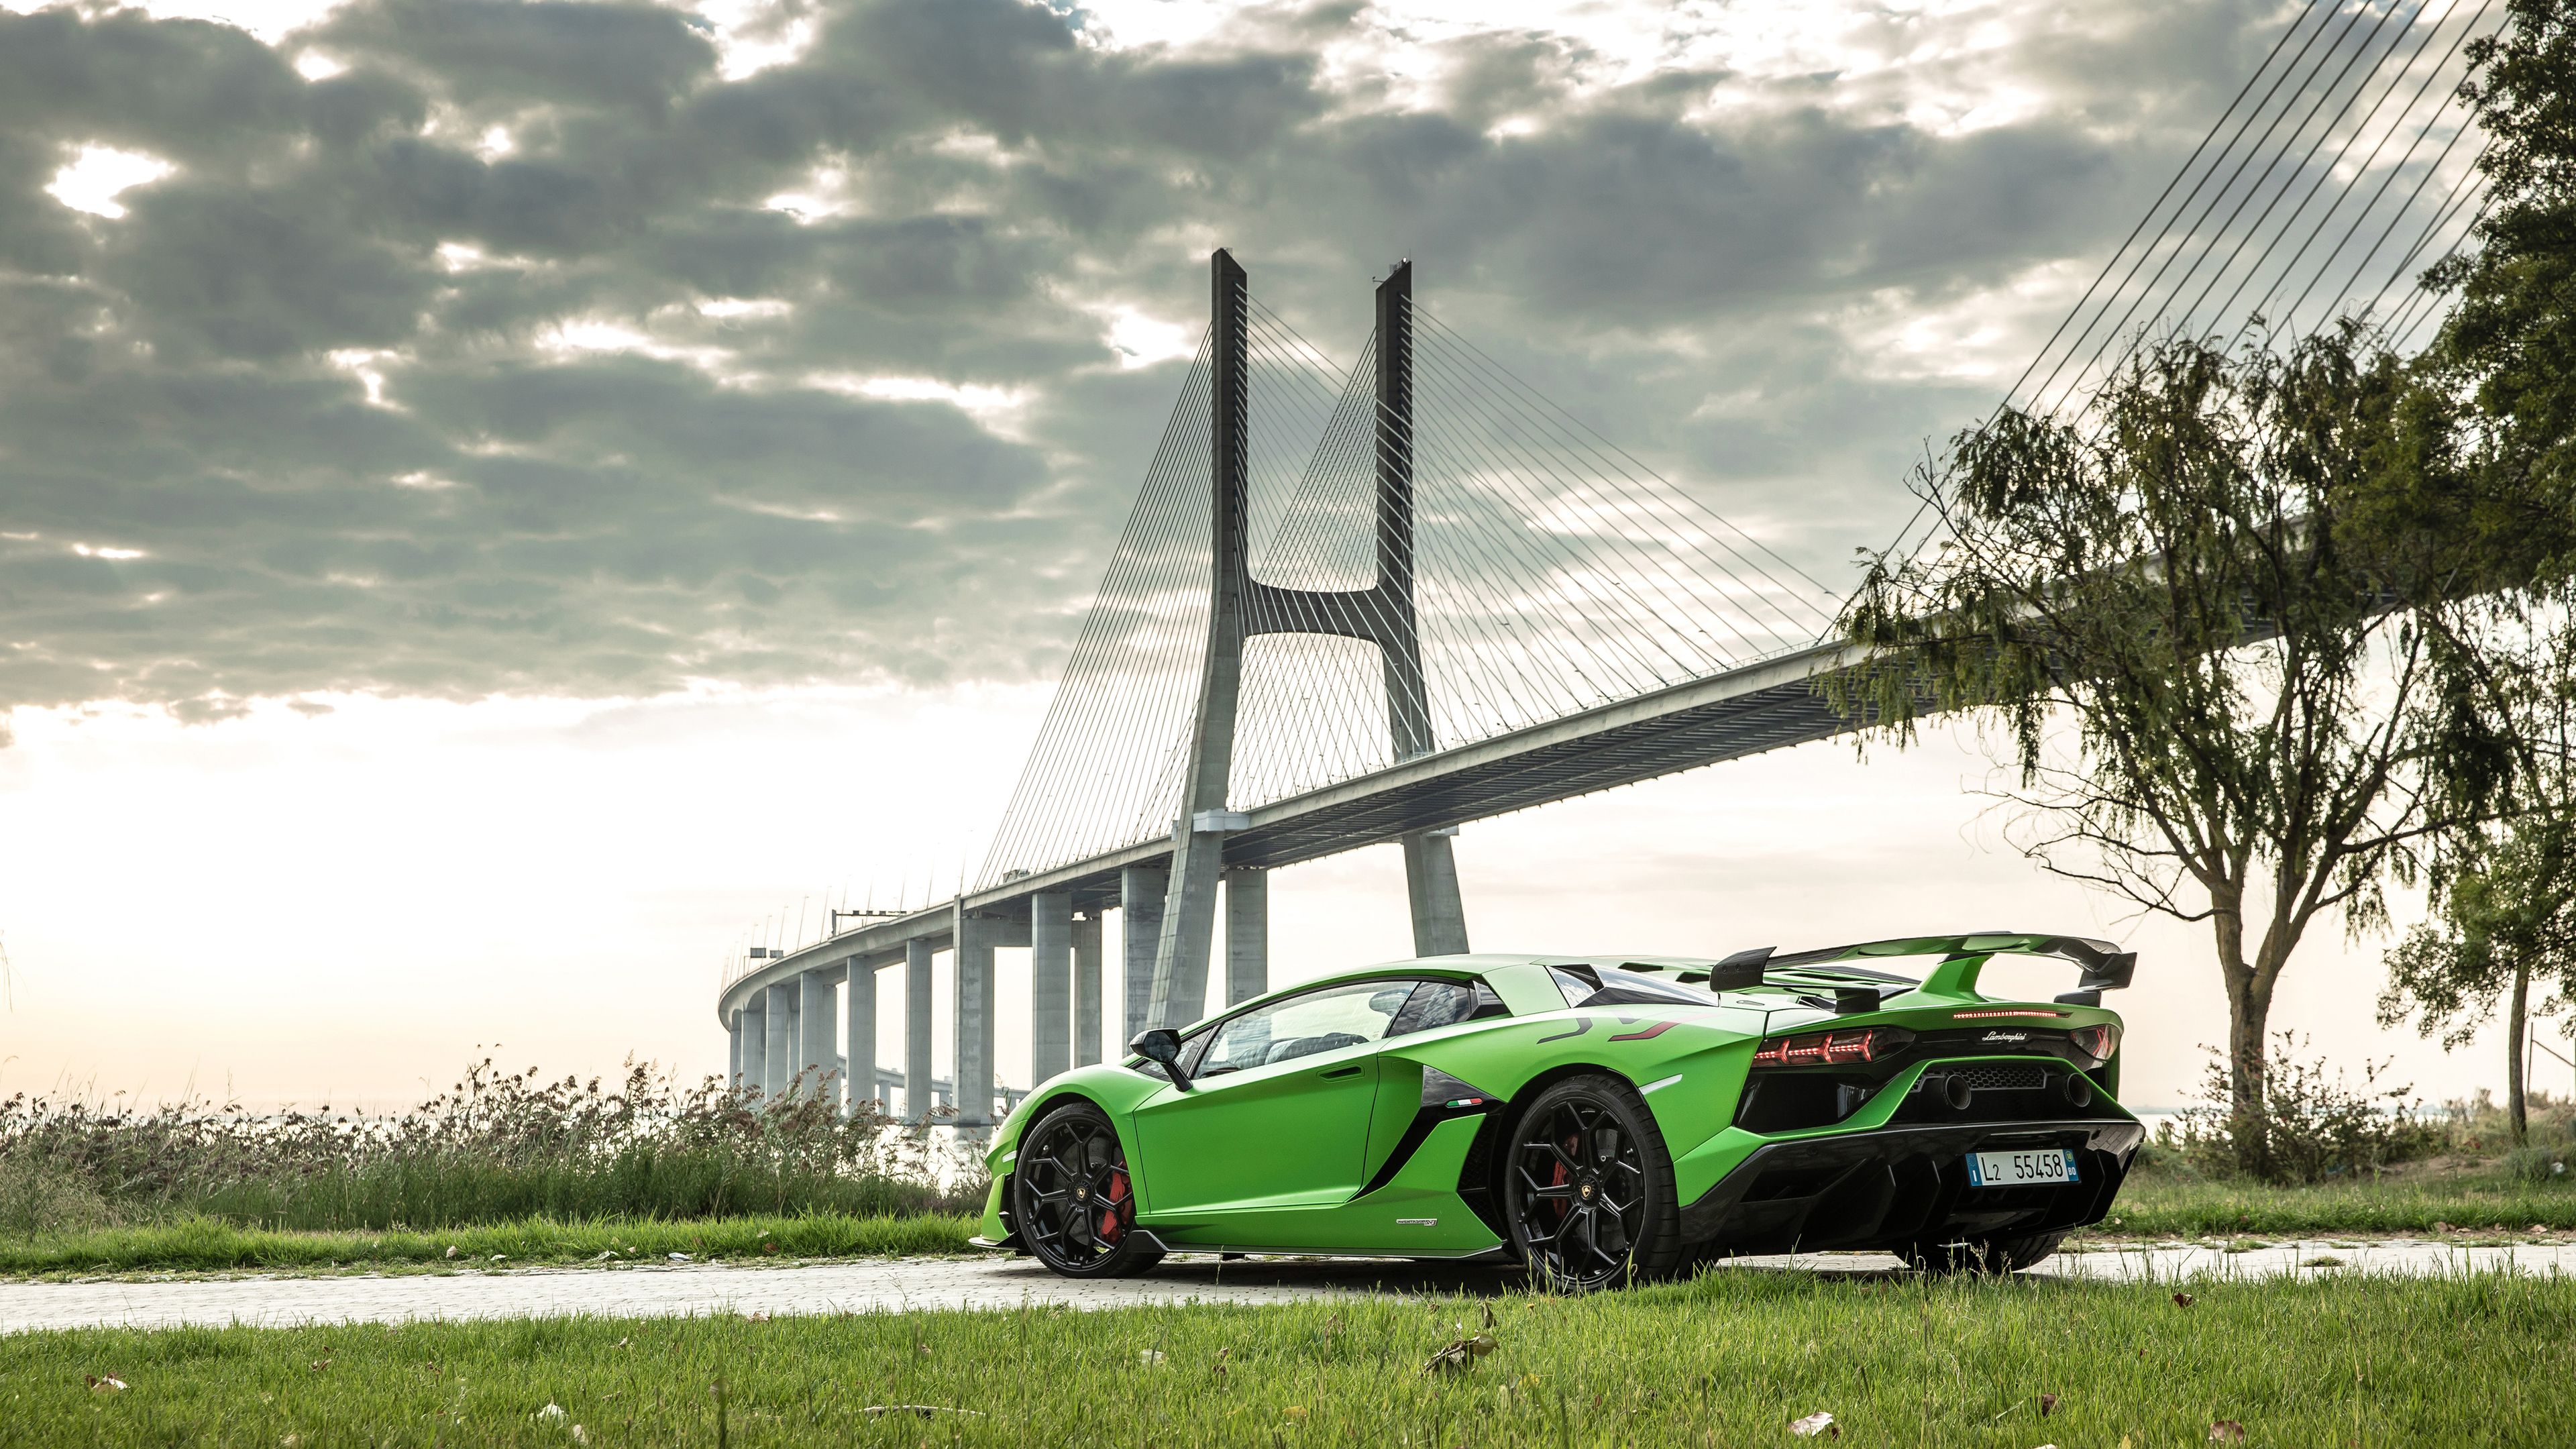 Lamborghini: Bạn đã bao giờ mơ ước lái một chiếc siêu xe Lamborghini chưa? Hãy xem hình ảnh siêu xe này để thỏa mãn đam mê và cảm nhận được sự tuyệt vời của Lamborghini.